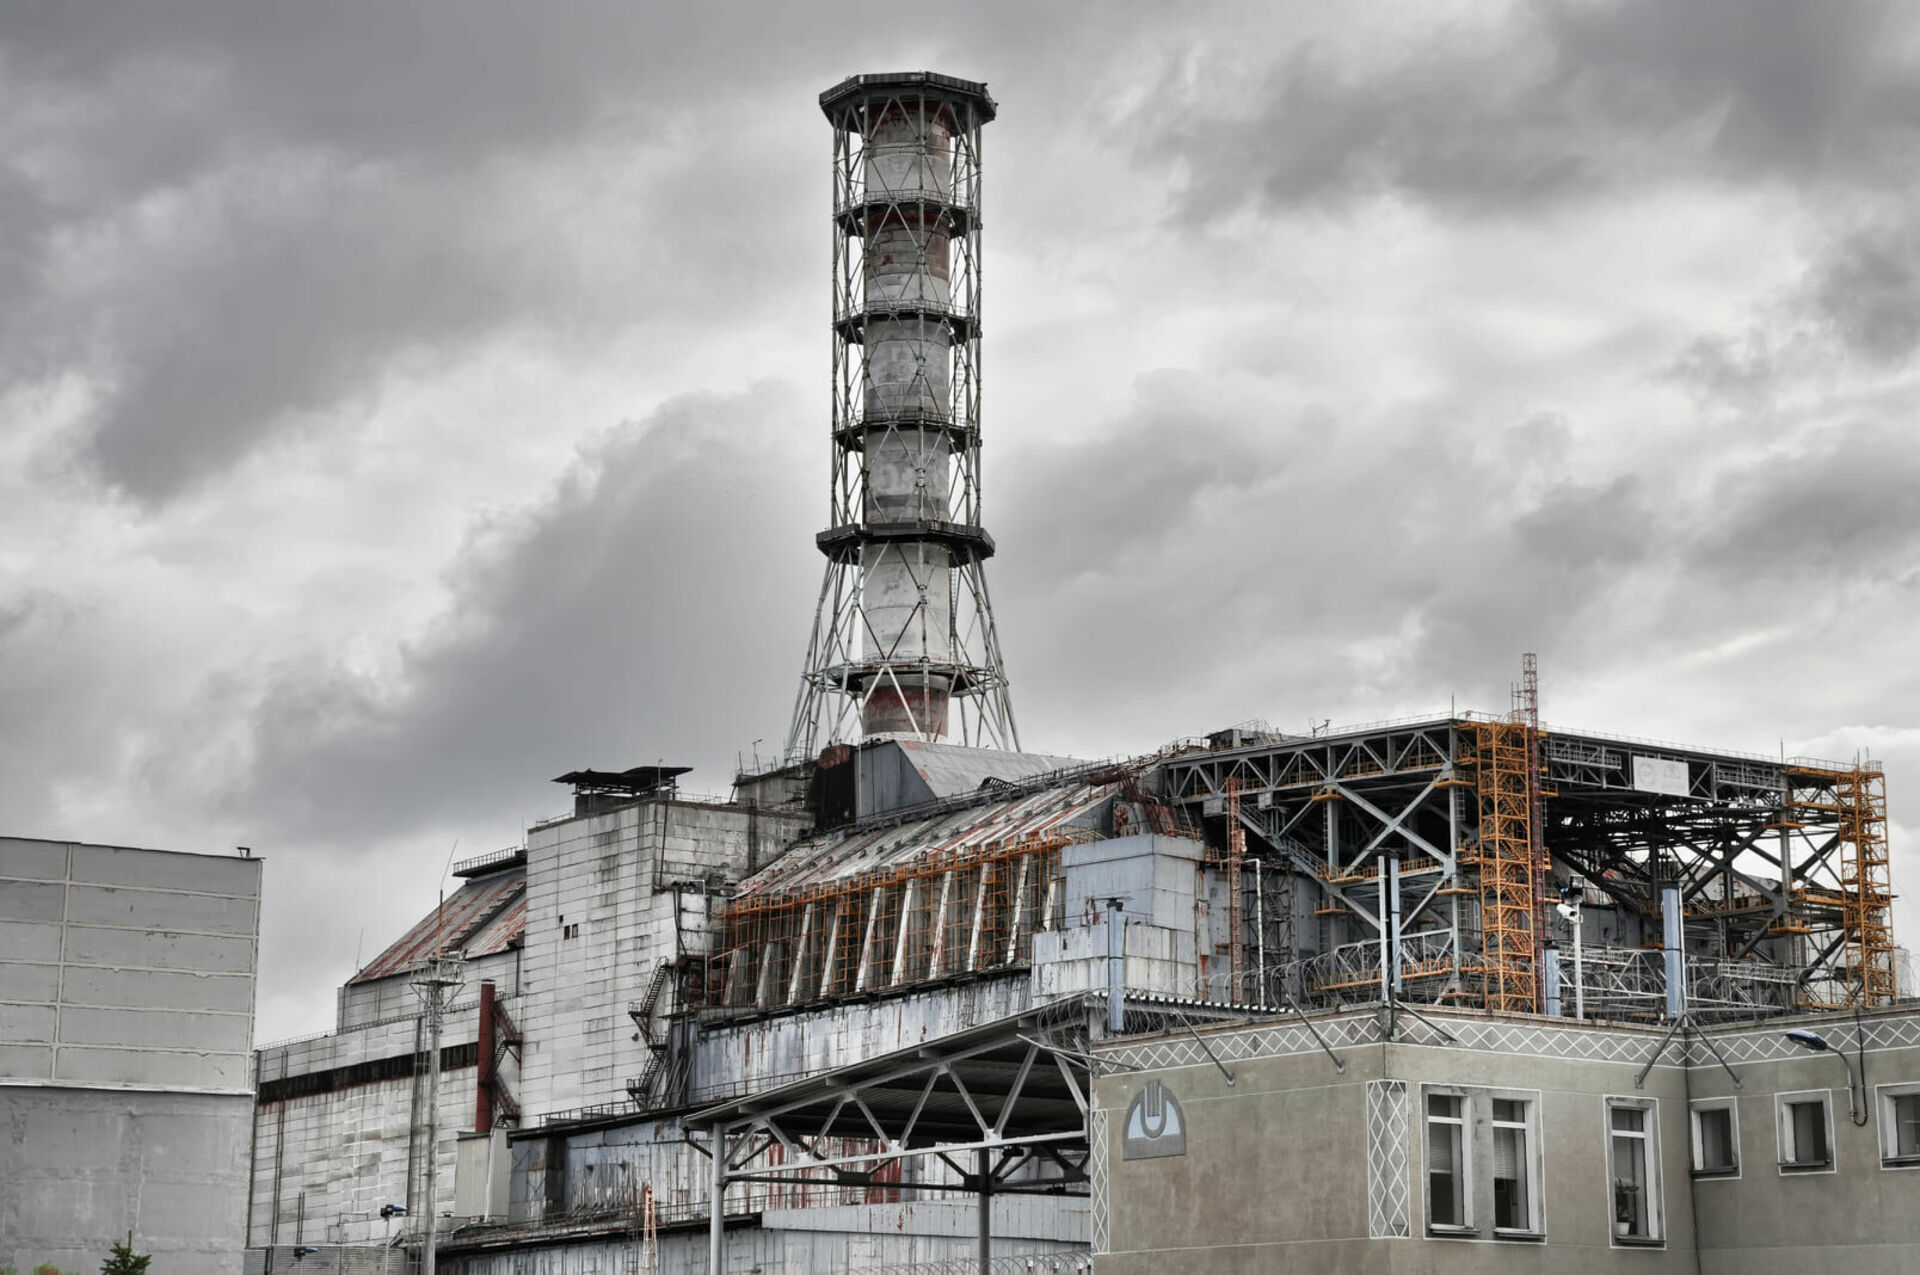 Чернобыльская аэс назначение. Чернобыль атомная станция. Припять станция АЭС. Атомная энергостанция Чернобыль. Что такое ЧАЭС это Чернобыльская атомная электростанция.